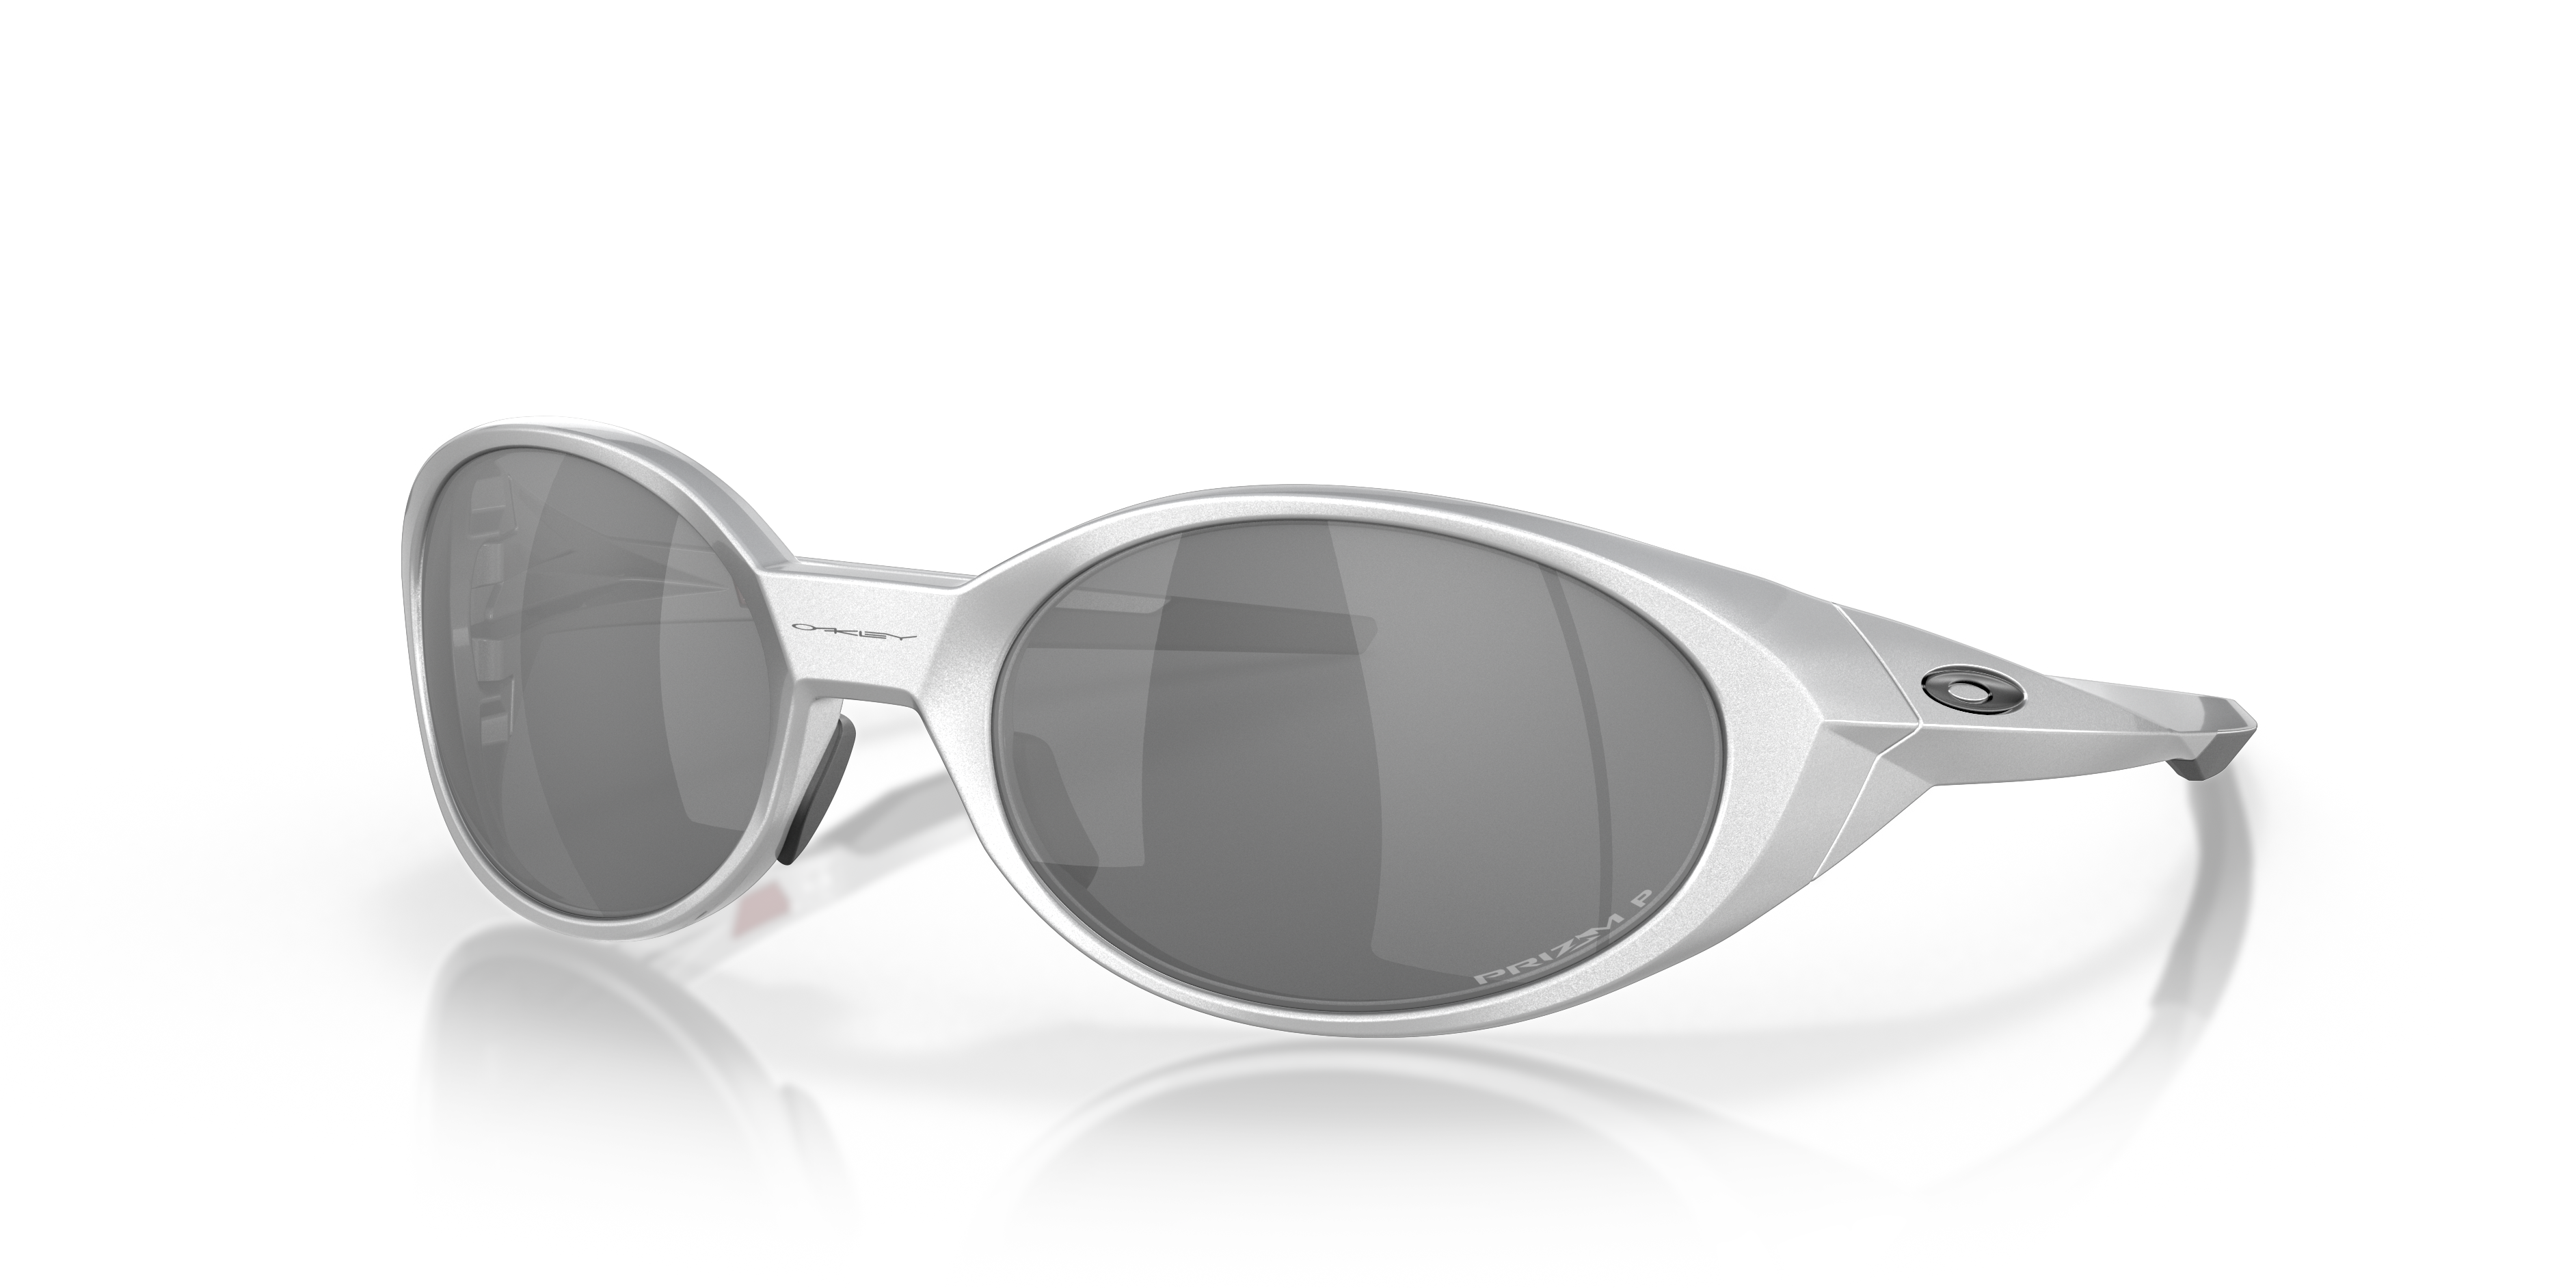 Are Oakley sunglasses worth the price? - Quora